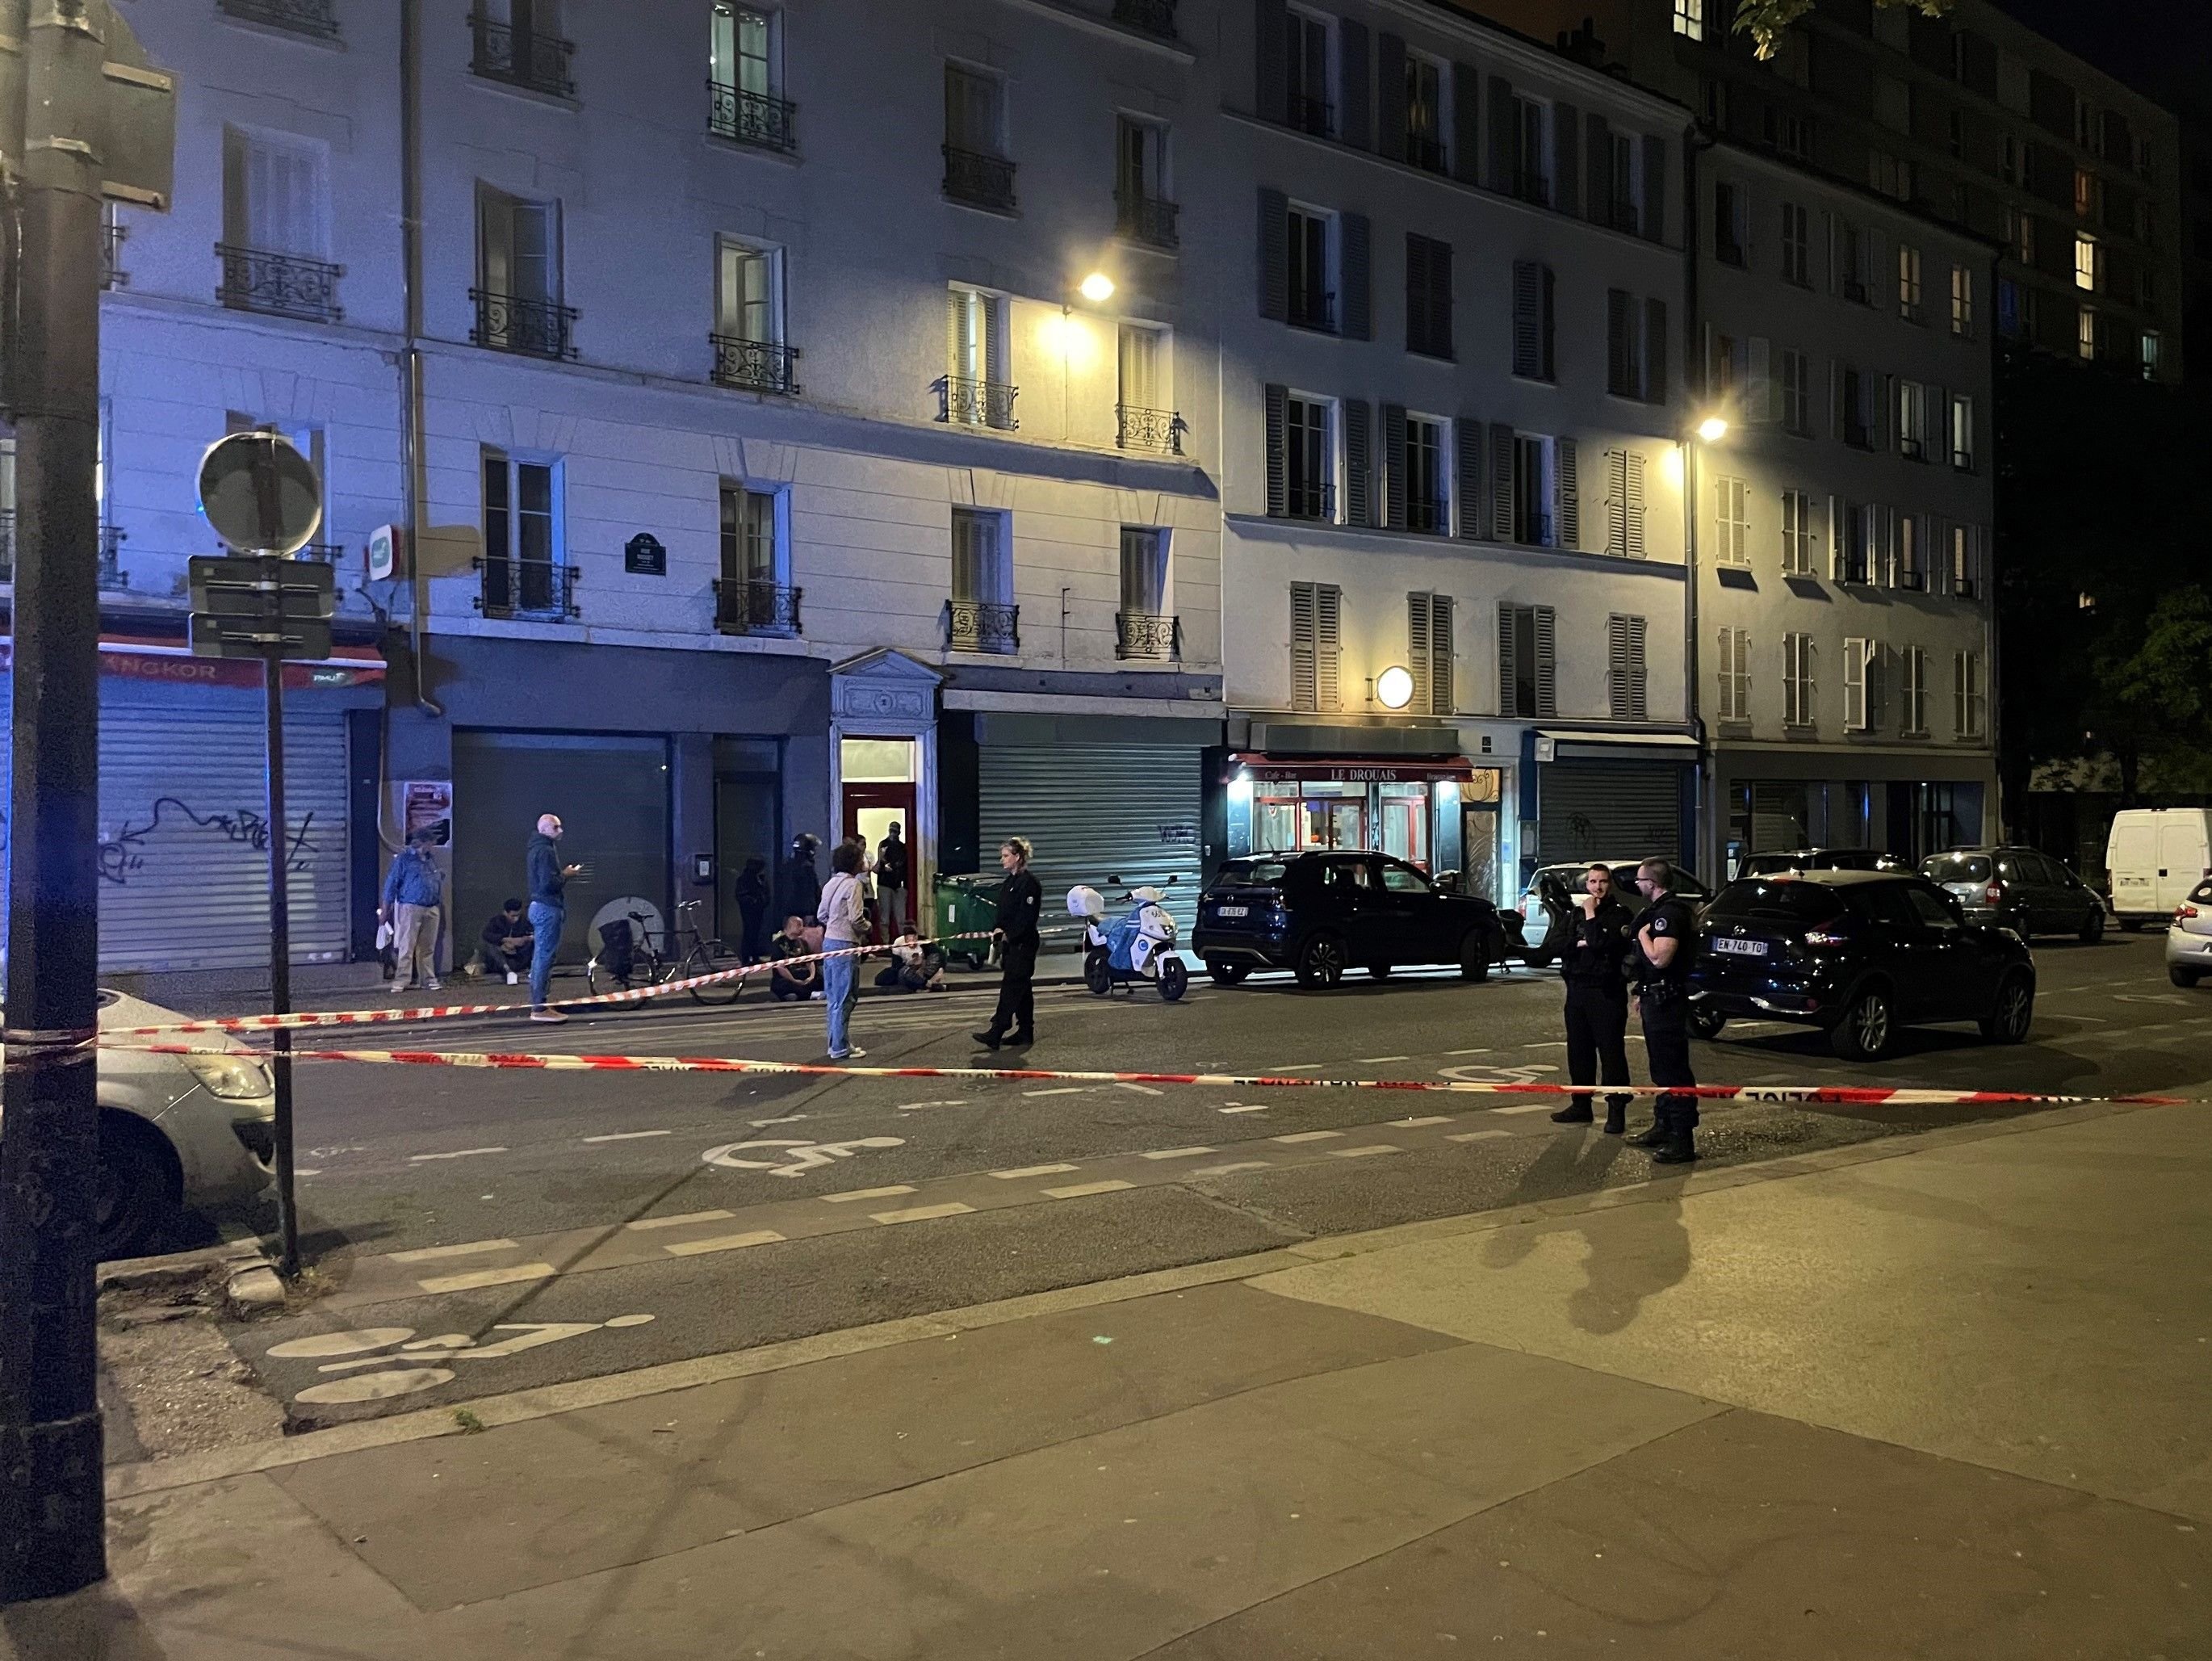 Paris (XIXe), mardi soir. Une partie de la rue Riquet a été bouclée plusieurs heures par la police, après que plusieurs coups de feu ont été entendus par des riverains à proximité d'une salle de sport, sans faire de blessés. LP/Laura Wojcik